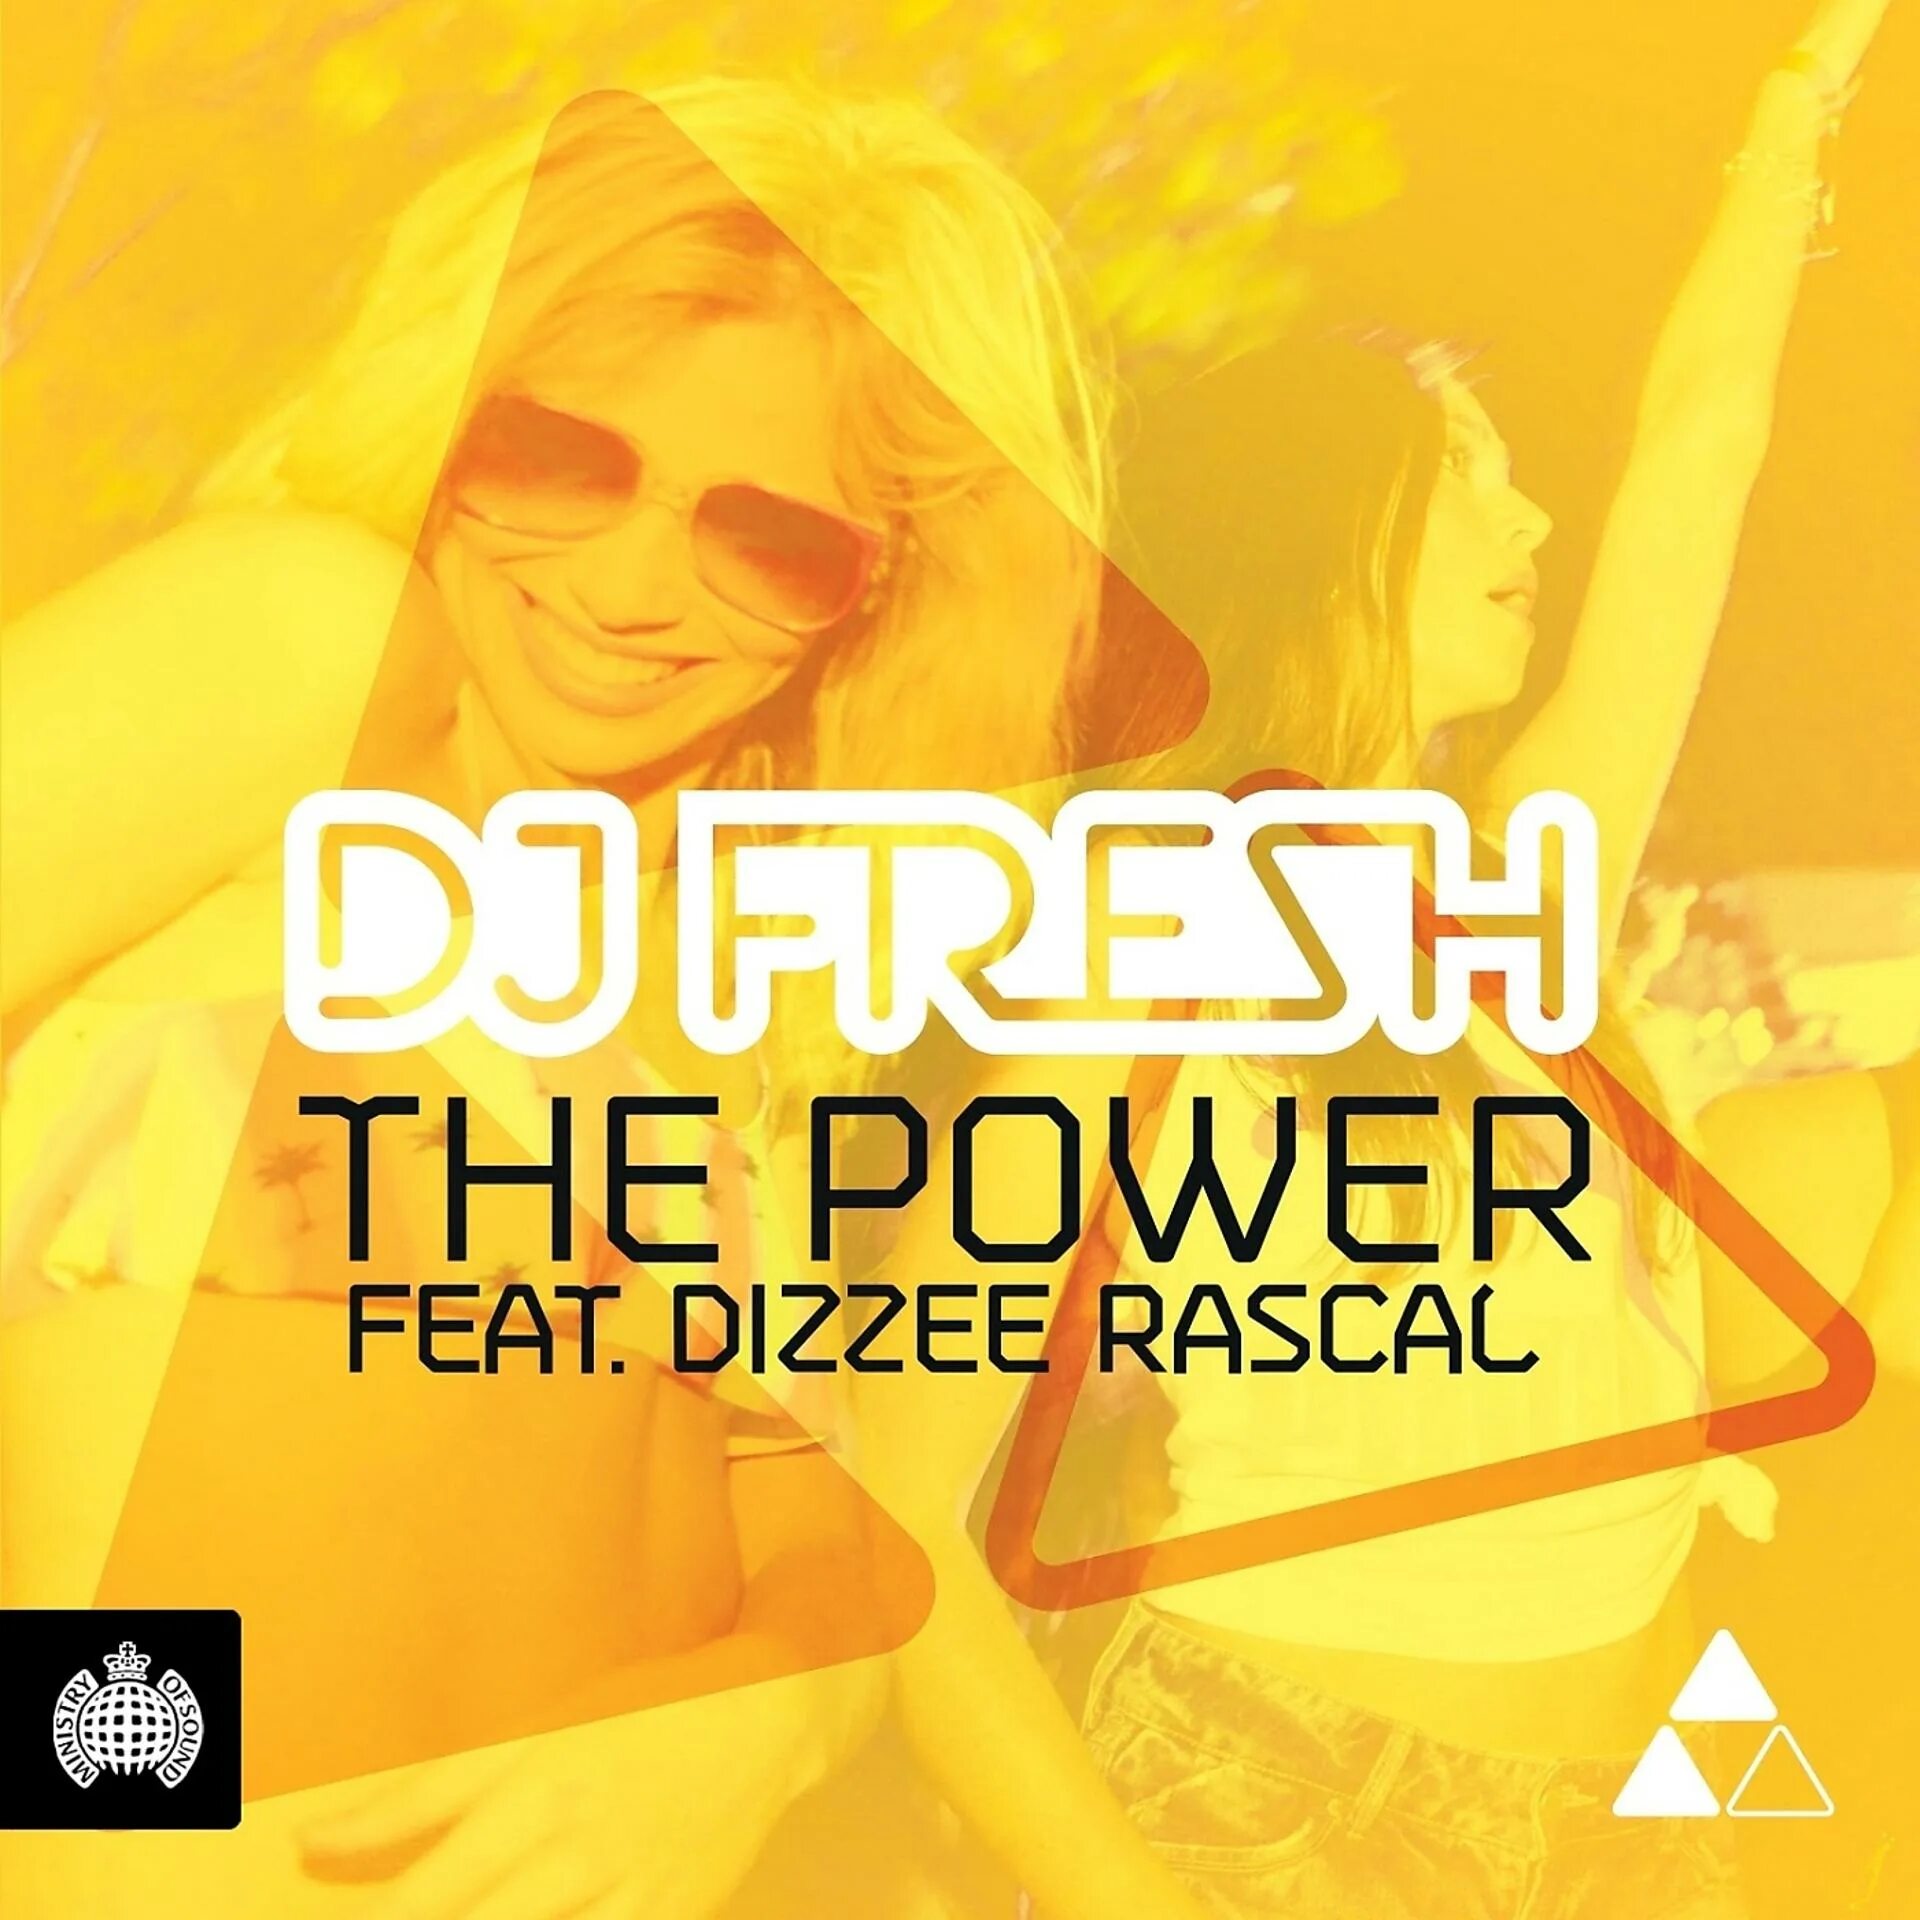 DJ Fresh the Power. DJ Fresh ft. Dizzee Rascal - the Power (Datsik Remix). Holiday Dizzee Rascal. DJ Fresh - Drive. Пауэр ремикс